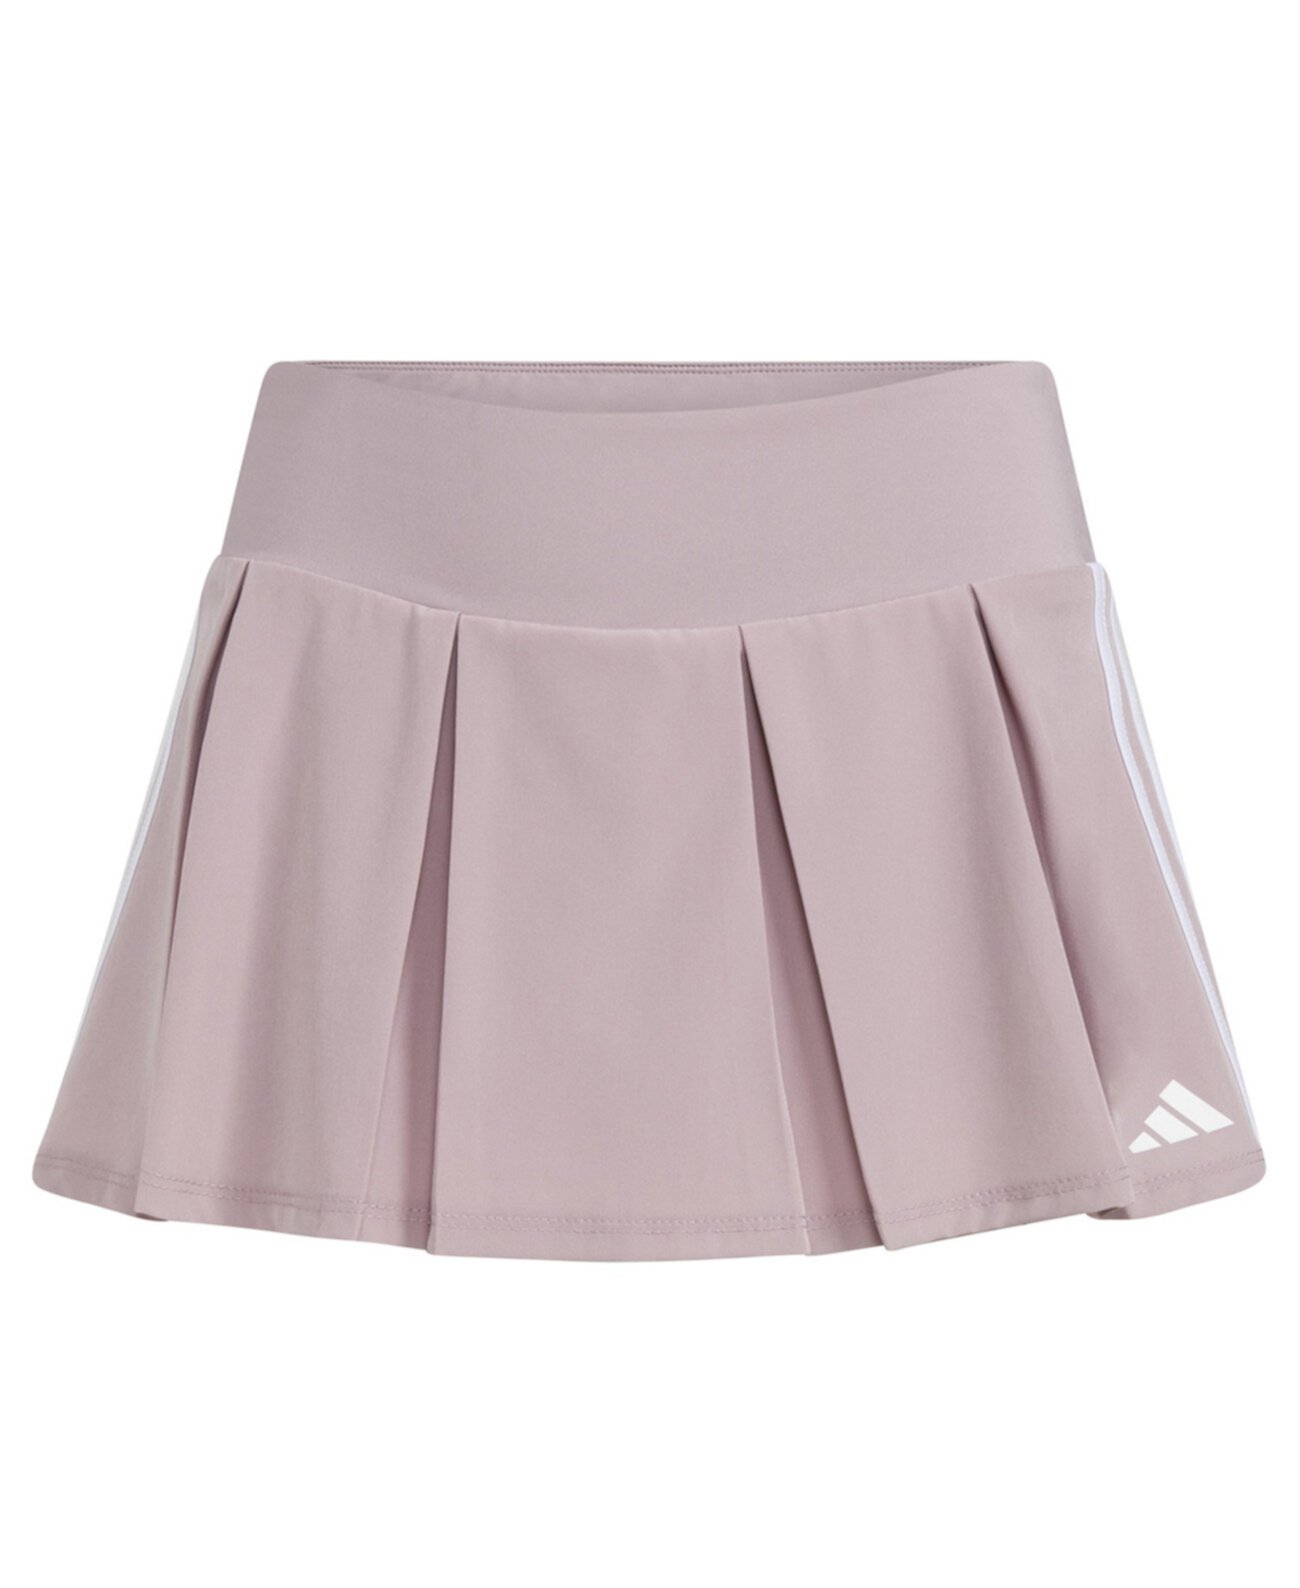 Плиссированная тканая юбка из эластичной ткани с 3 полосками для больших девочек с отдельным поясом Adidas